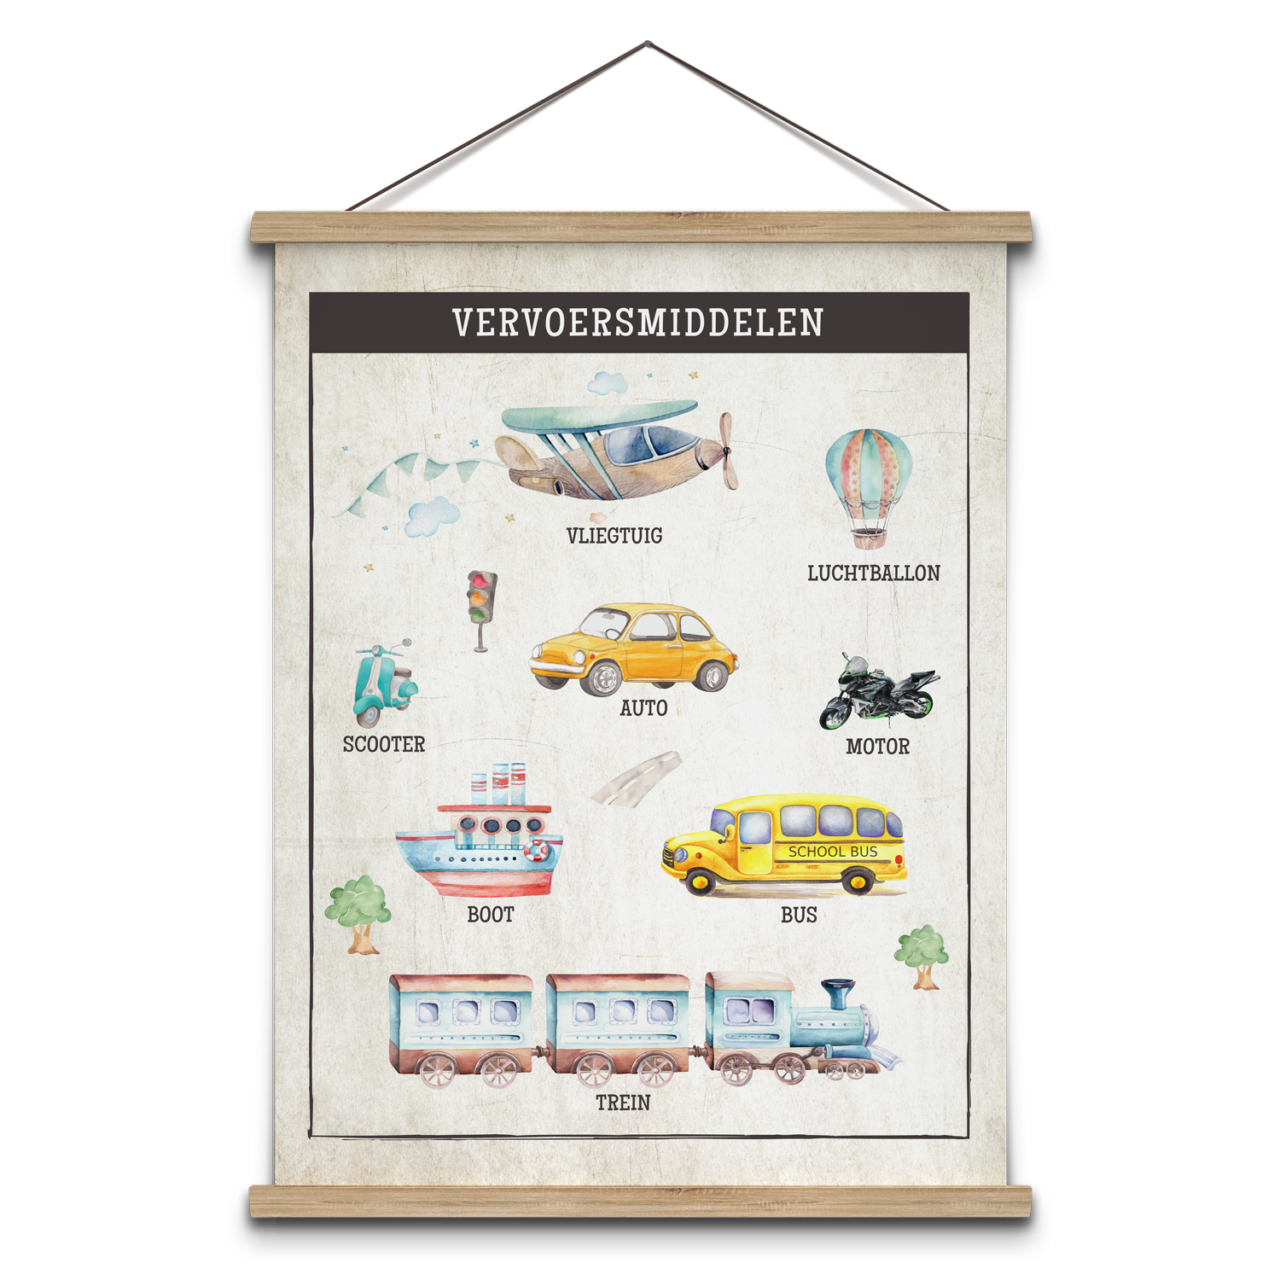 Schoolplaat met vervoersmiddelen, vliegtuig, auto, bus, trein en boot